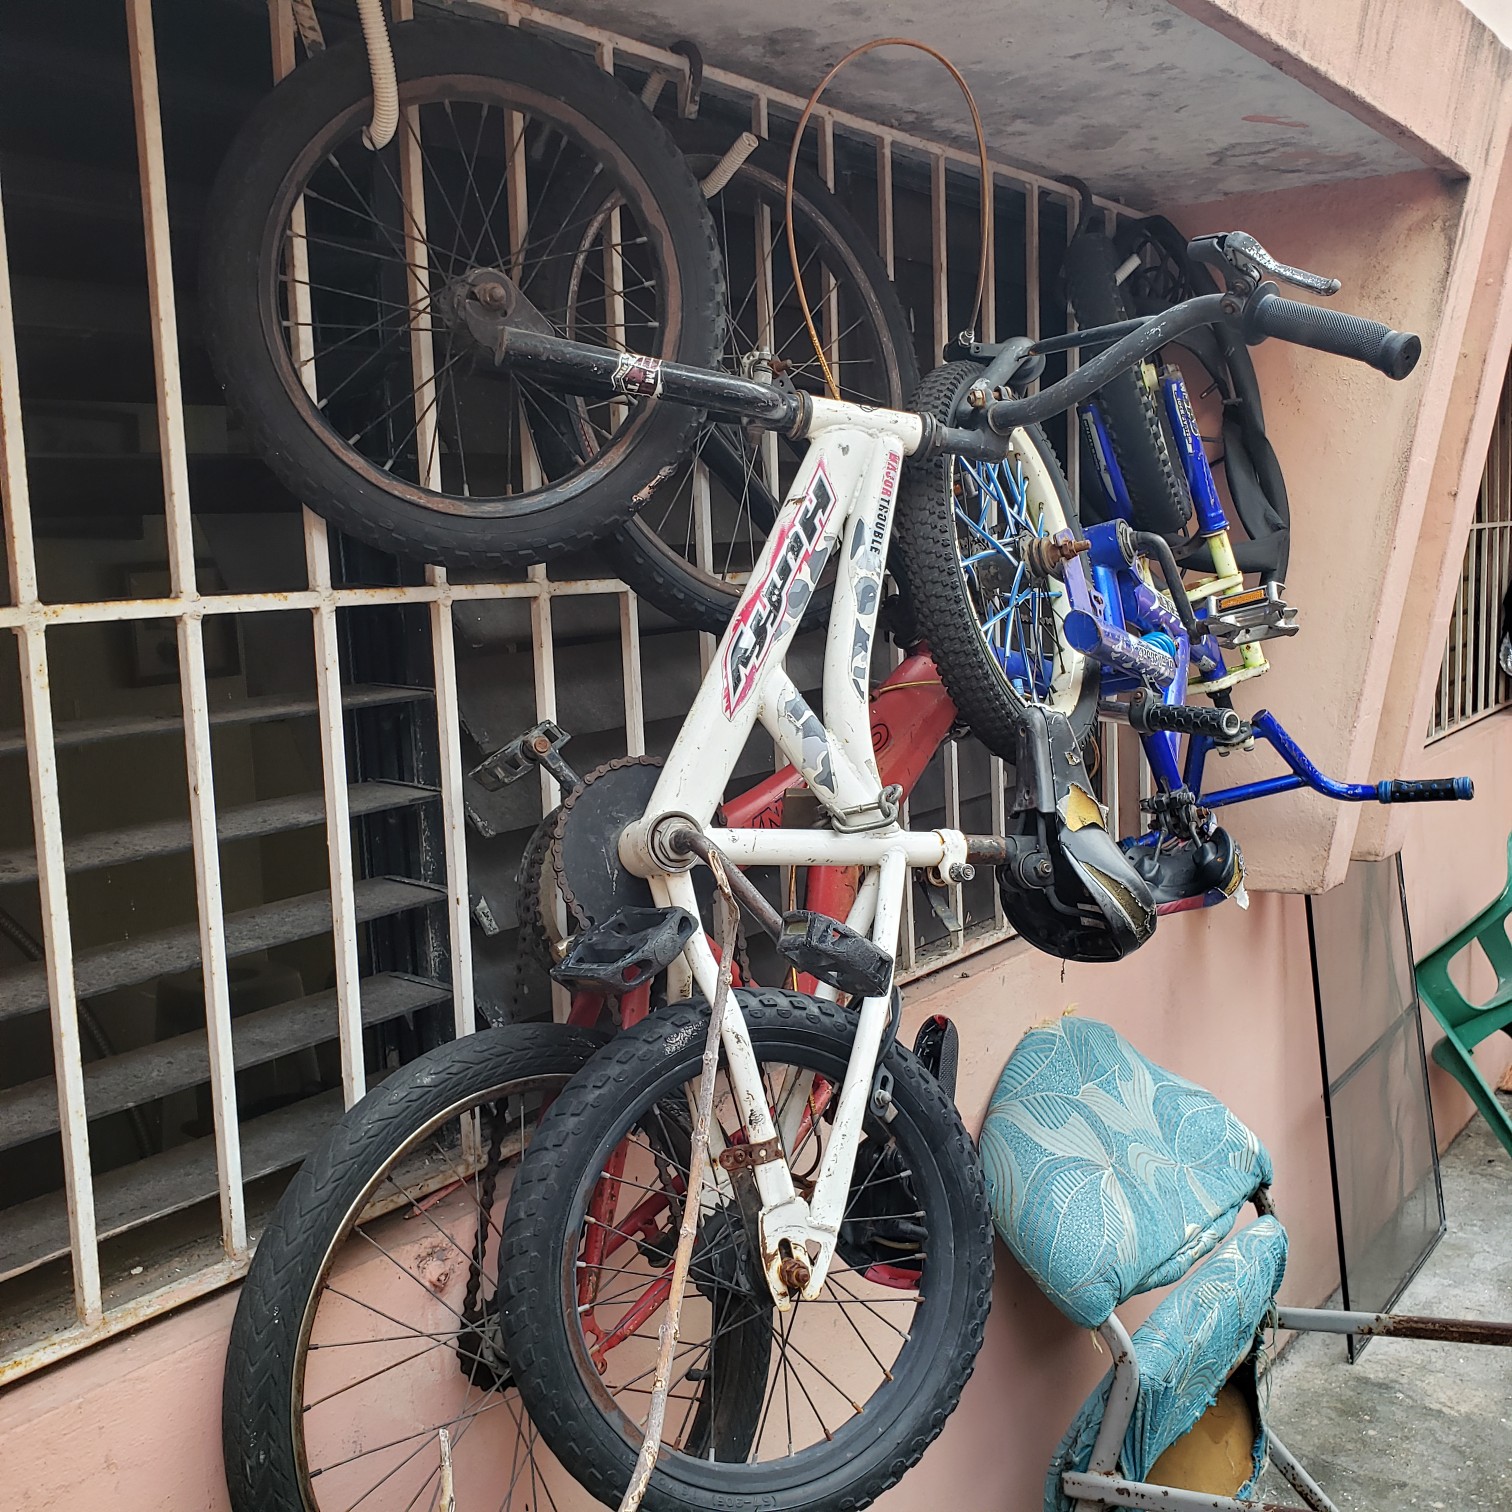 bicicletas y accesorios - Bicicletas aro 16 4